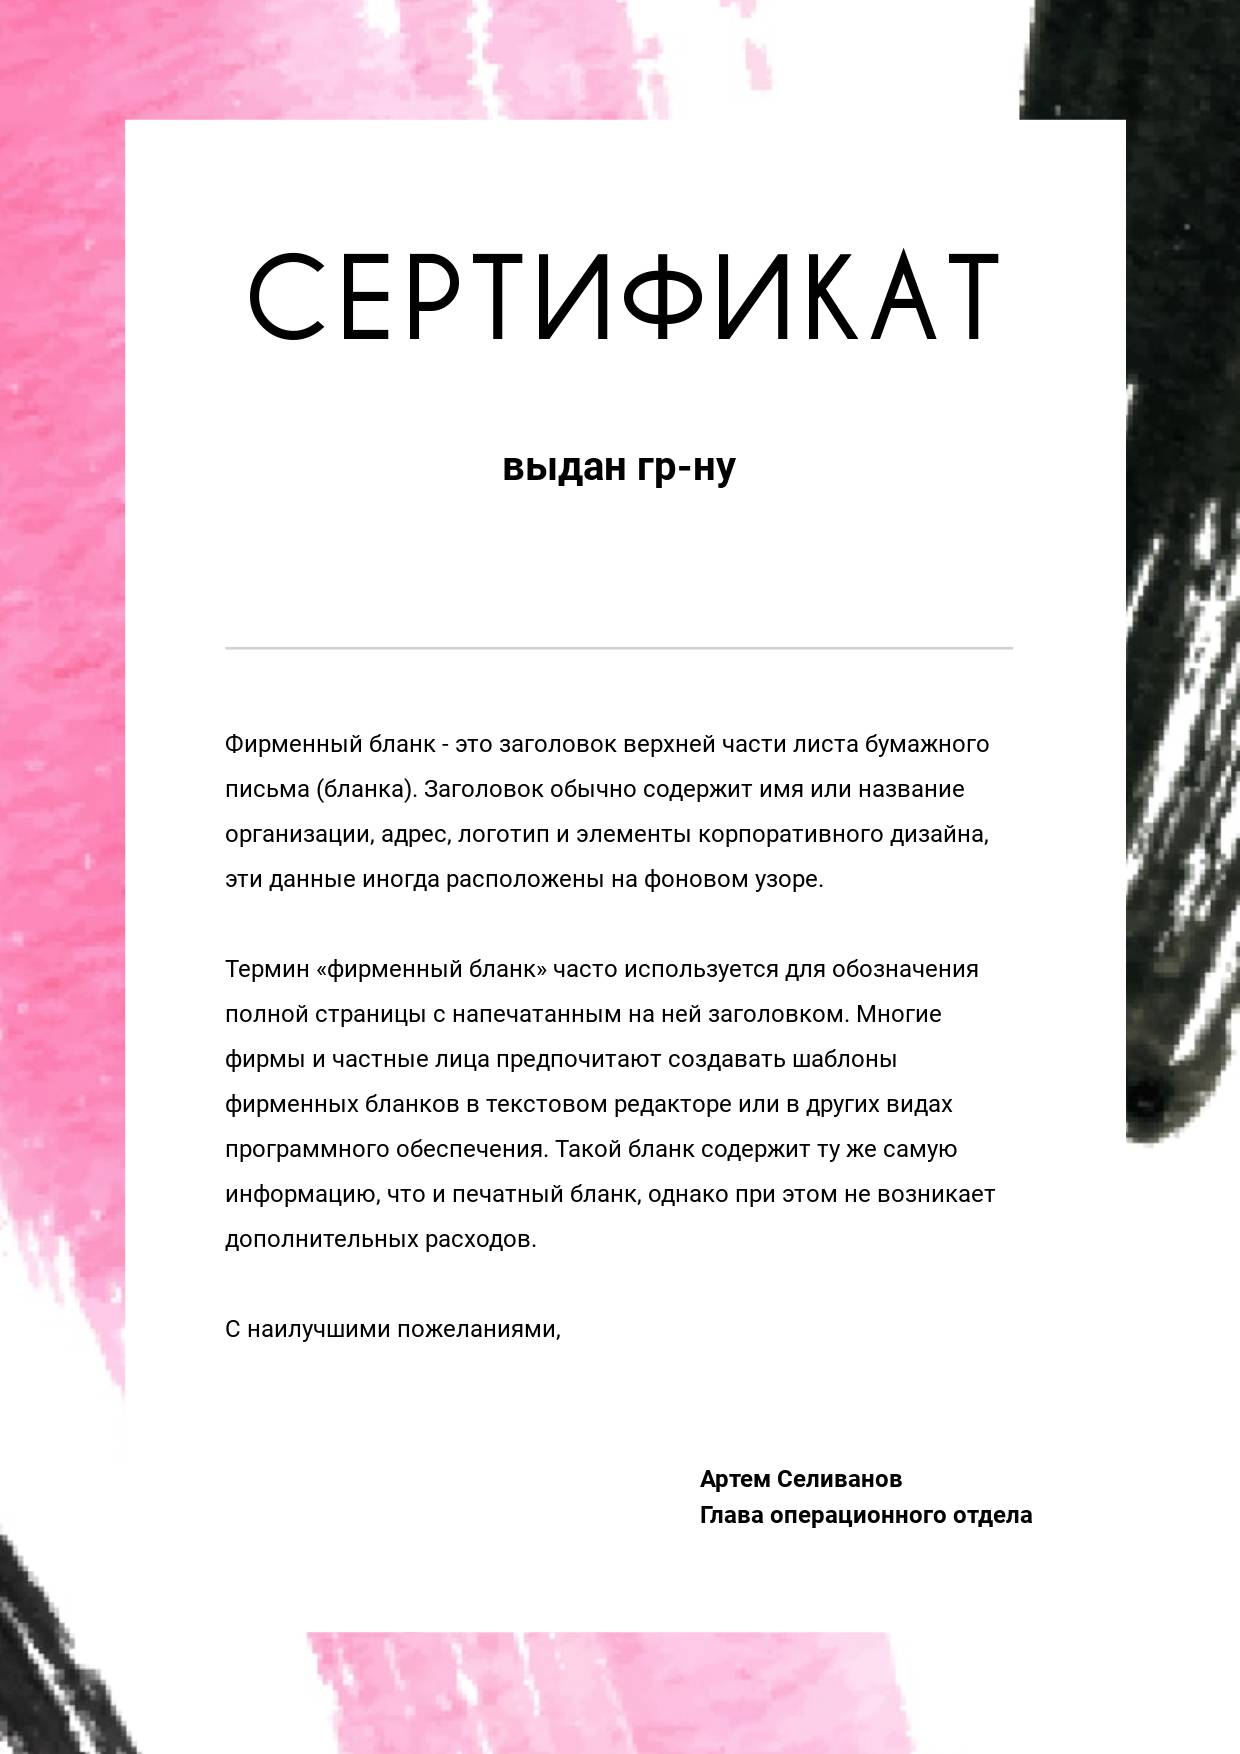 Черно-розовый сертификат с хаотичными мазками кистью на фоне